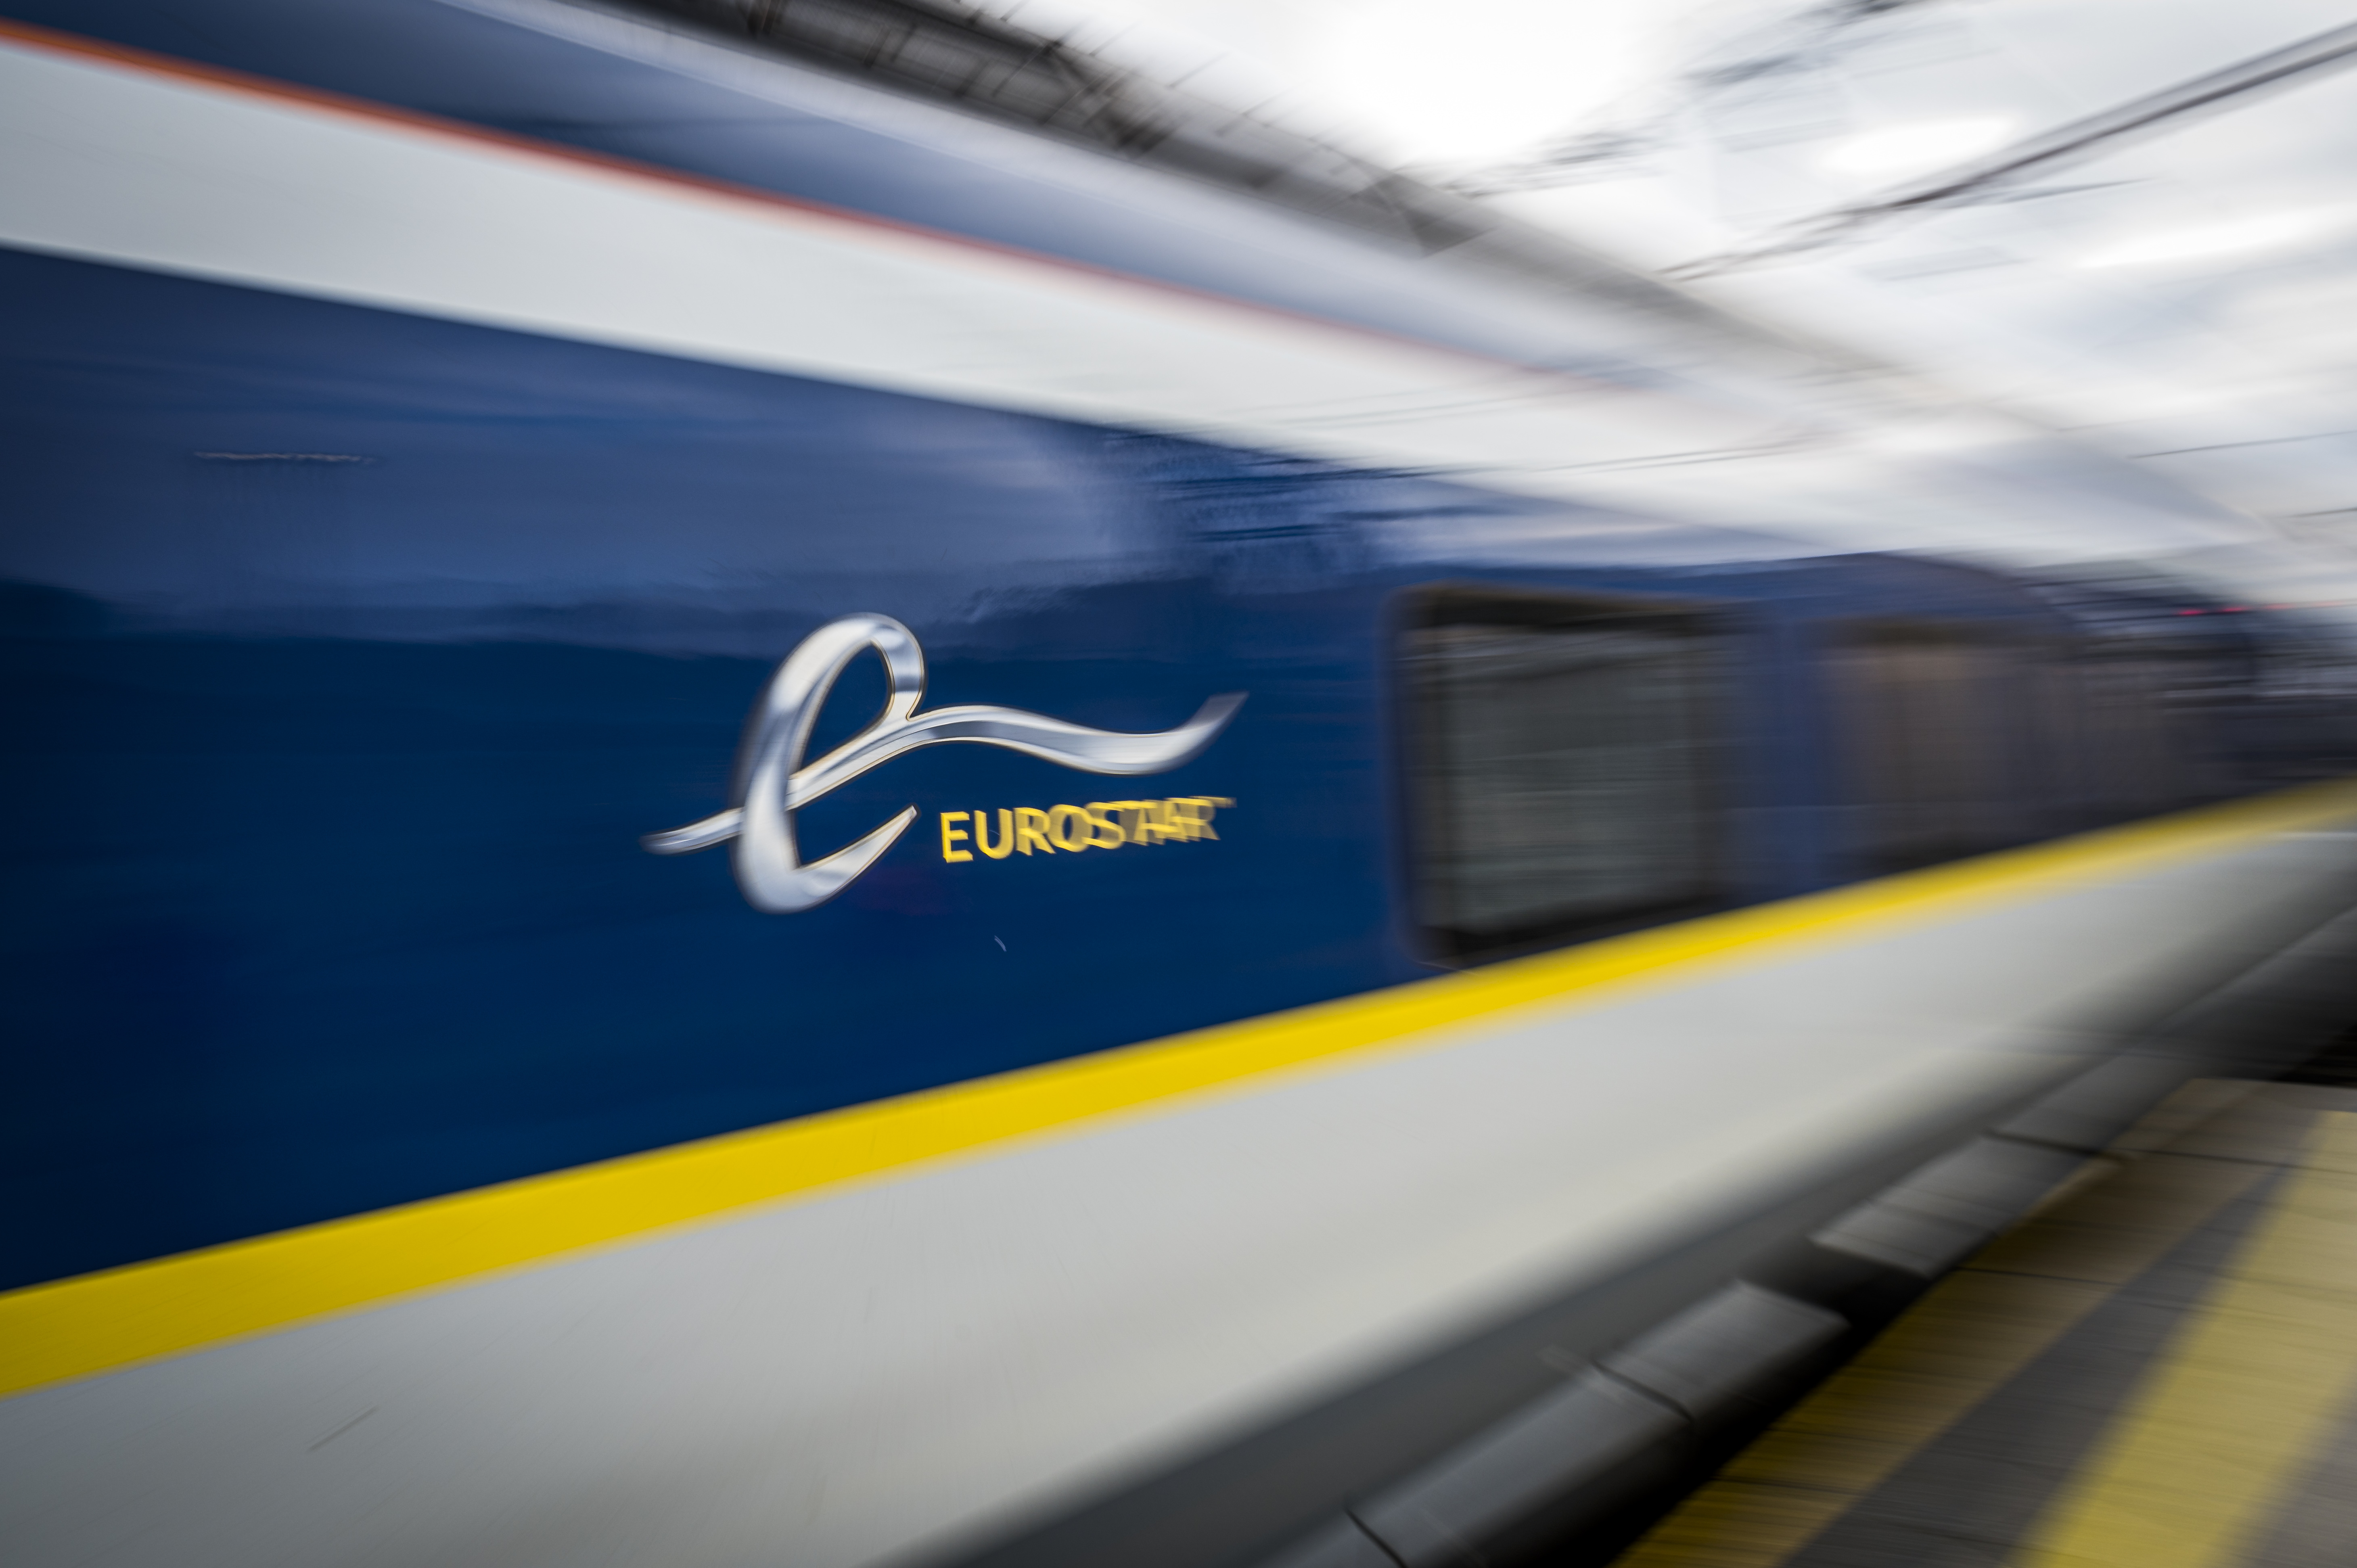 Merk Thalys verdwijnt na fusie met Eurostar